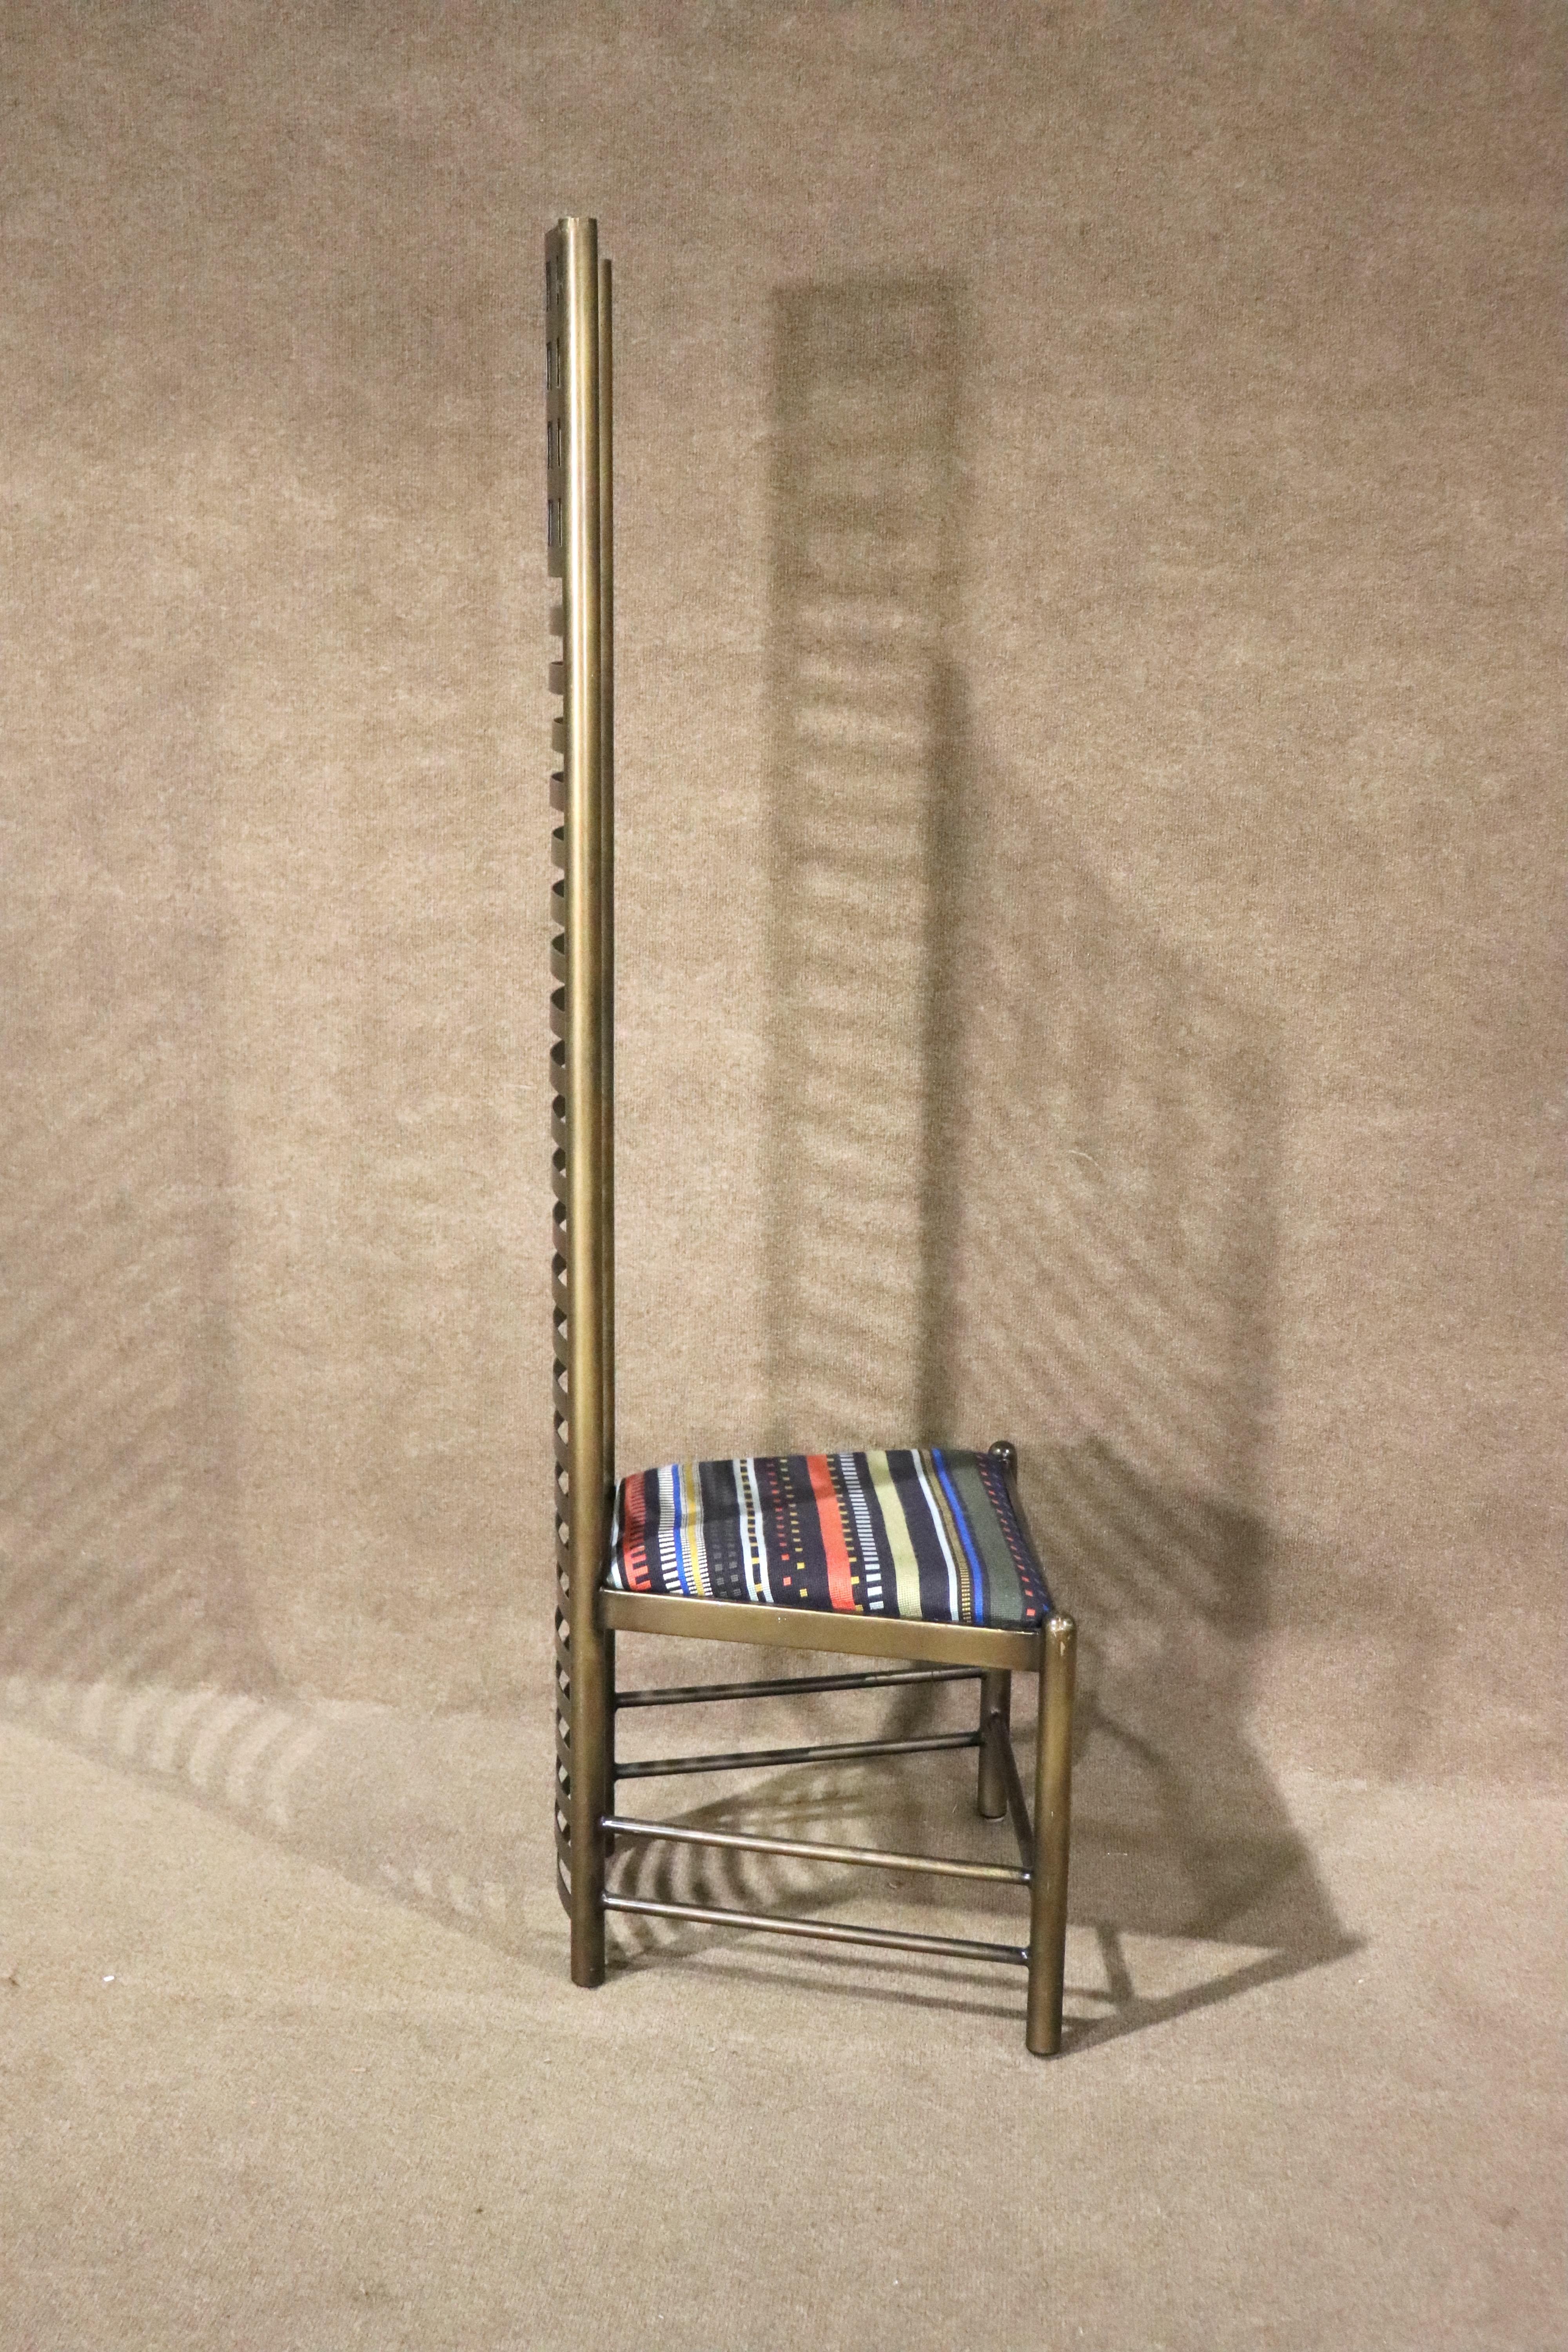 Stuhl mit hoher Rückenlehne, entworfen von Charles Rennie Mackintosh für Cassina. 1902 entworfener und 1973 wieder aufgelegter Stuhl. Hergestellt von Cassina in Italien.
Bitte bestätigen Sie den Standort NY oder NJ